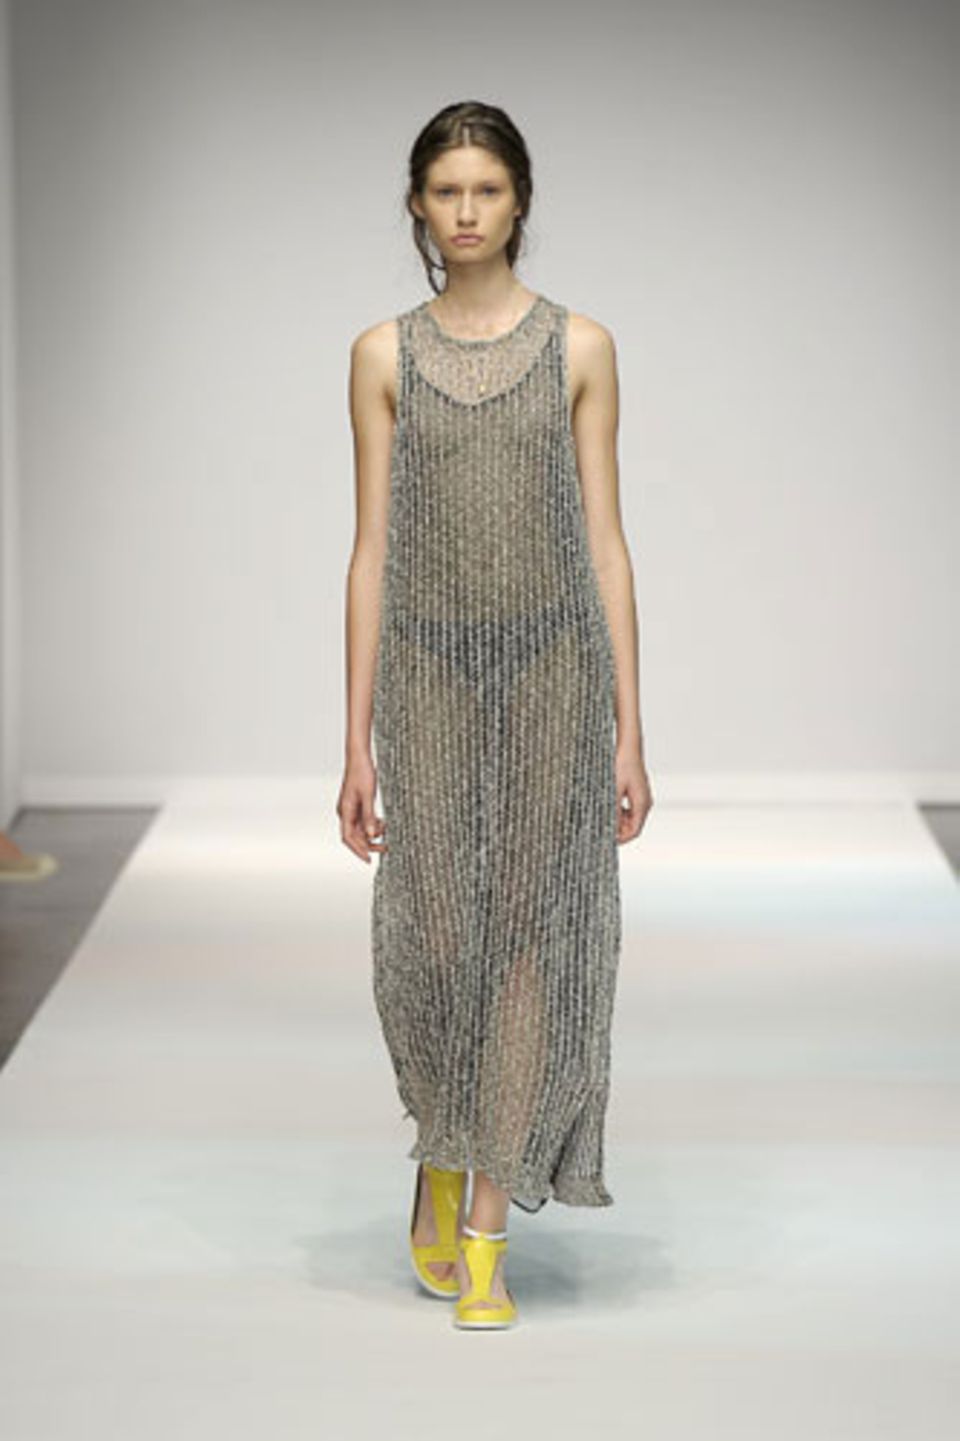 Sinnlich geht es hingegen bei Lala Berlin zu: Das transparente Kleid mit Anklängen der 90er-Mode lässt tief blicken.